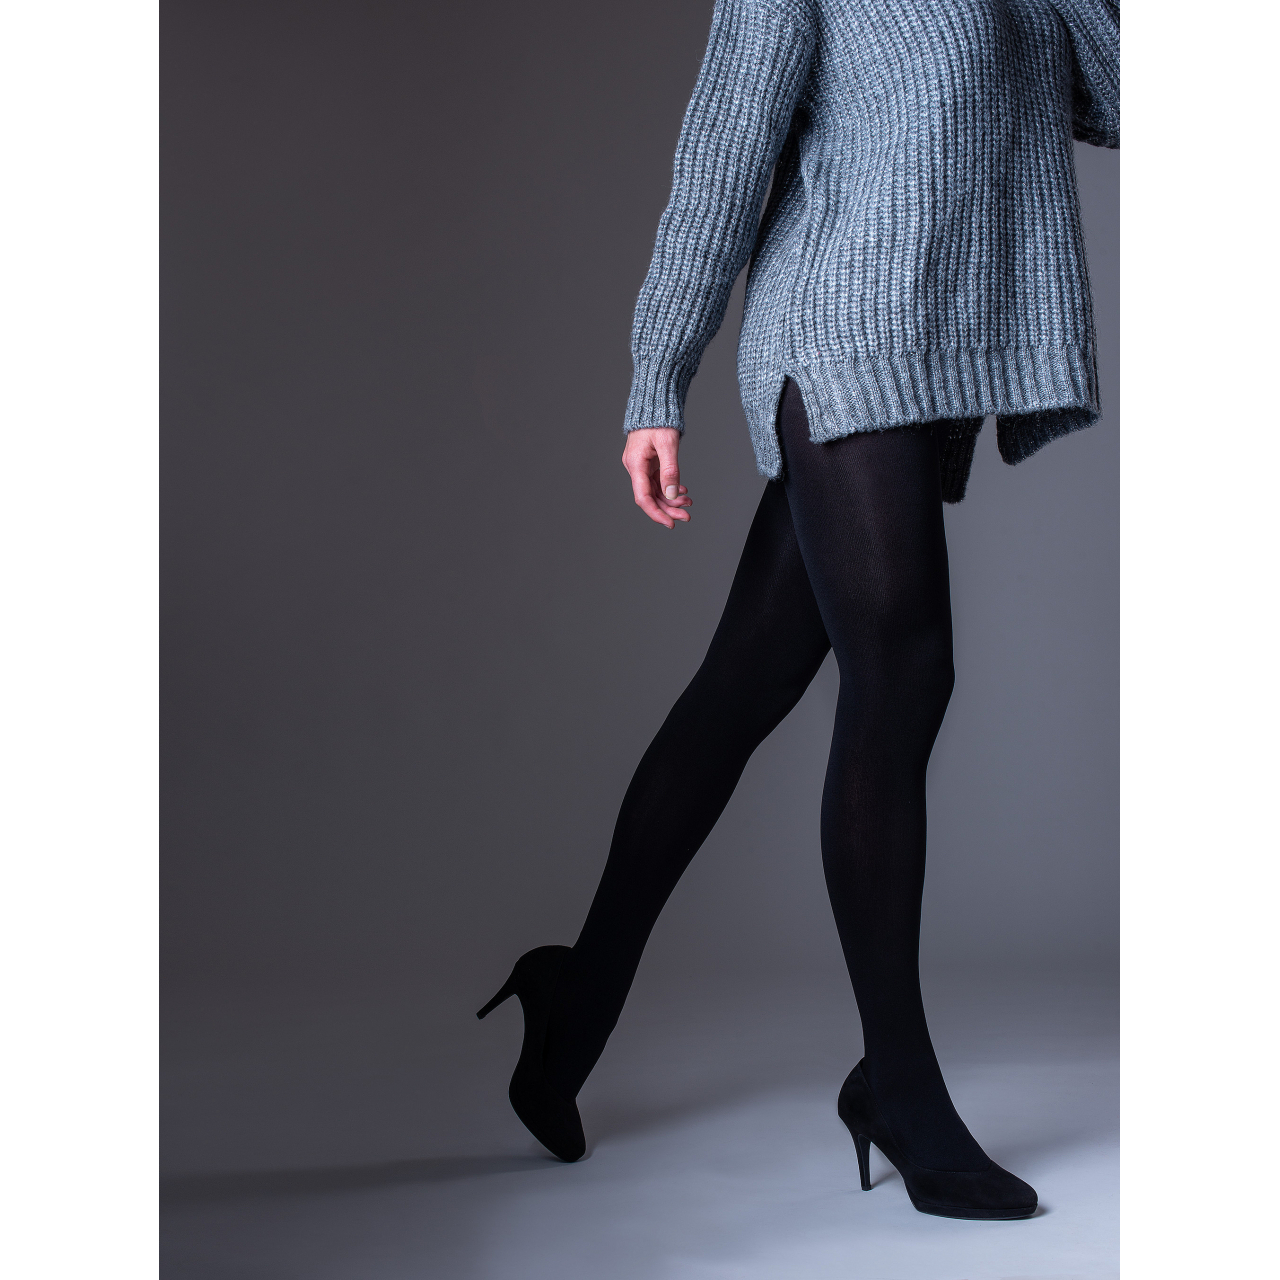 Punčochové kalhoty Lady B WINTER tights 200 DEN - černé, XL